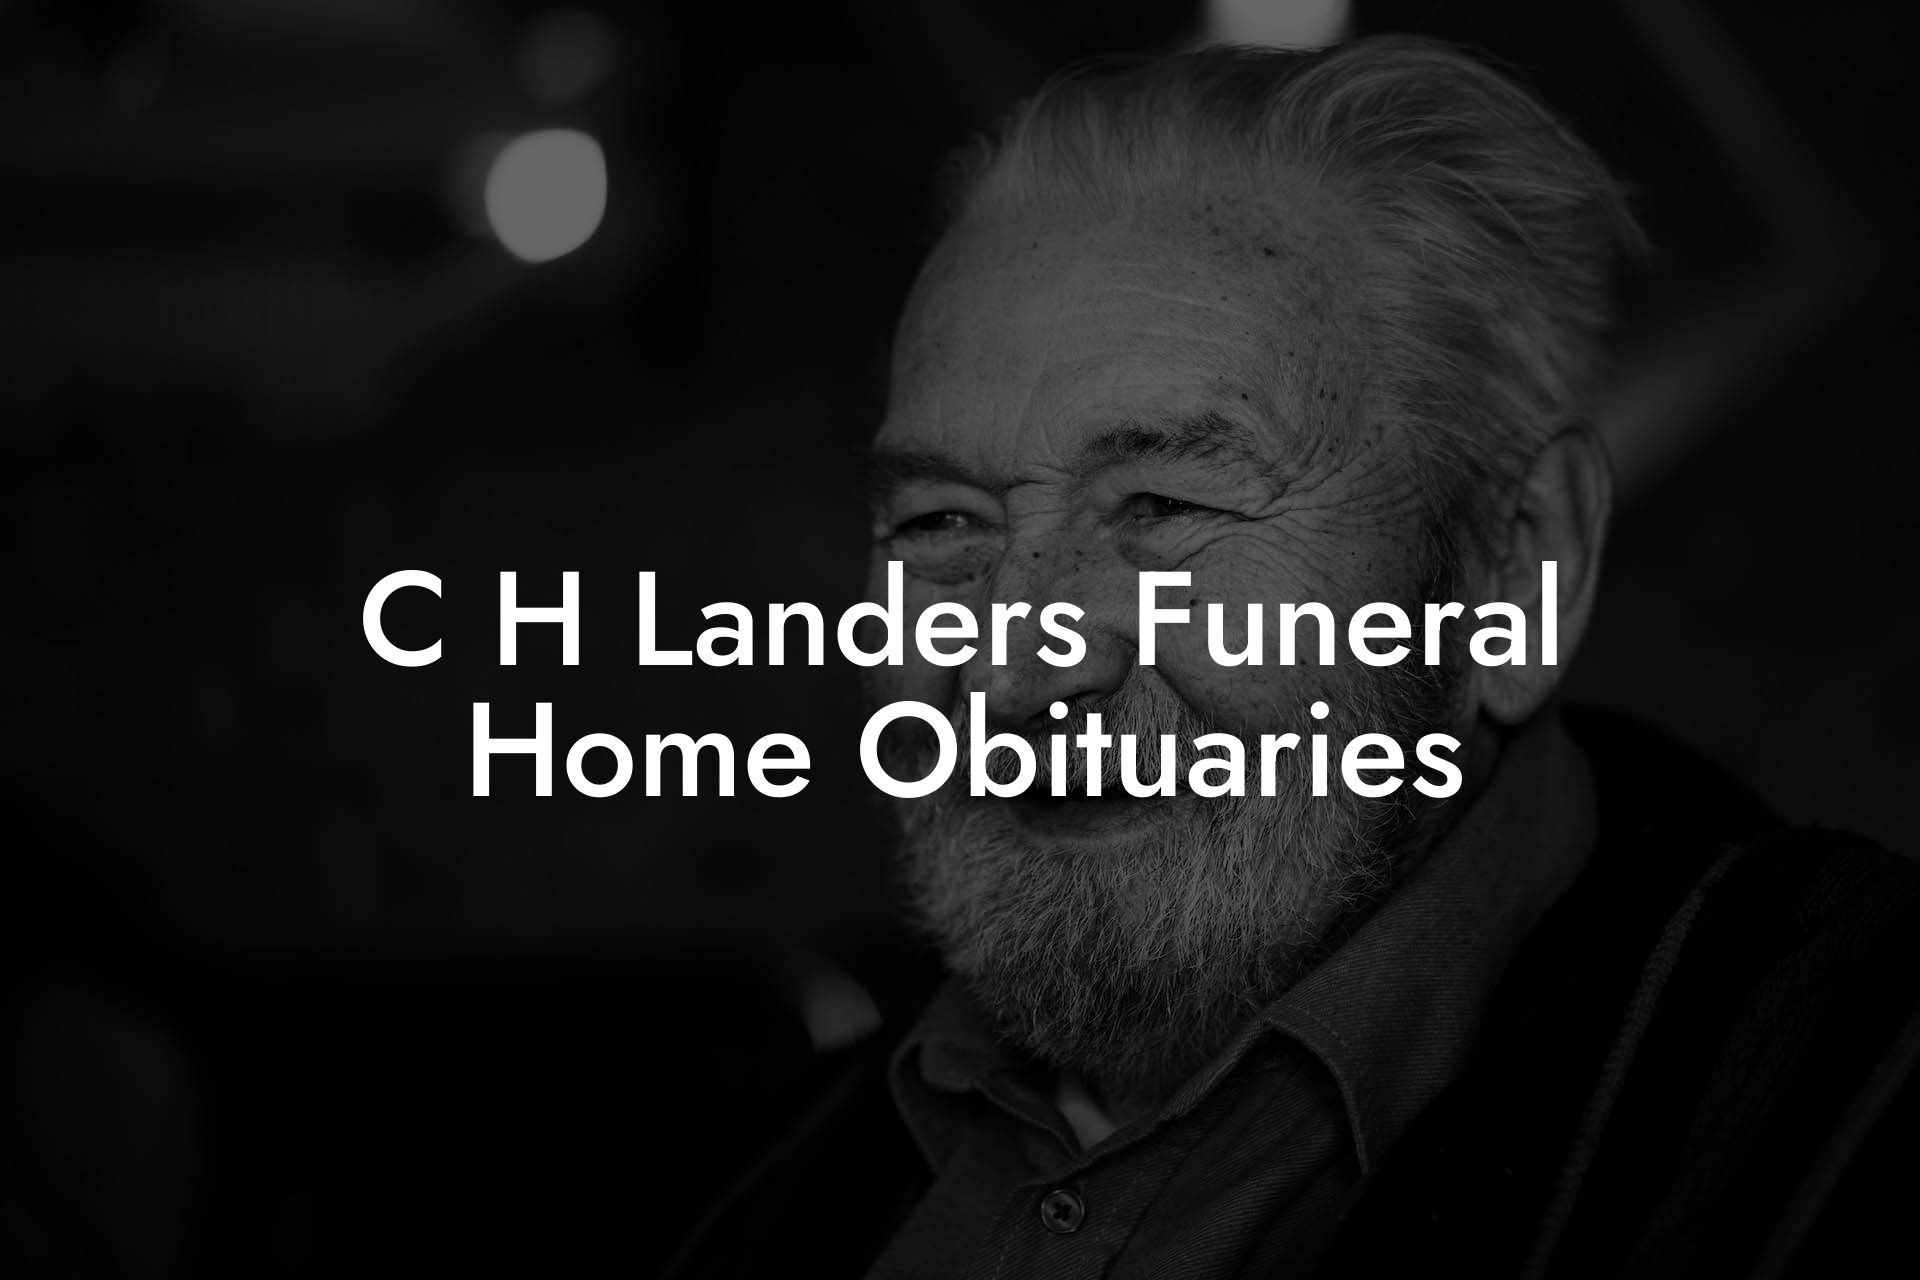 C H Landers Funeral Home Obituaries